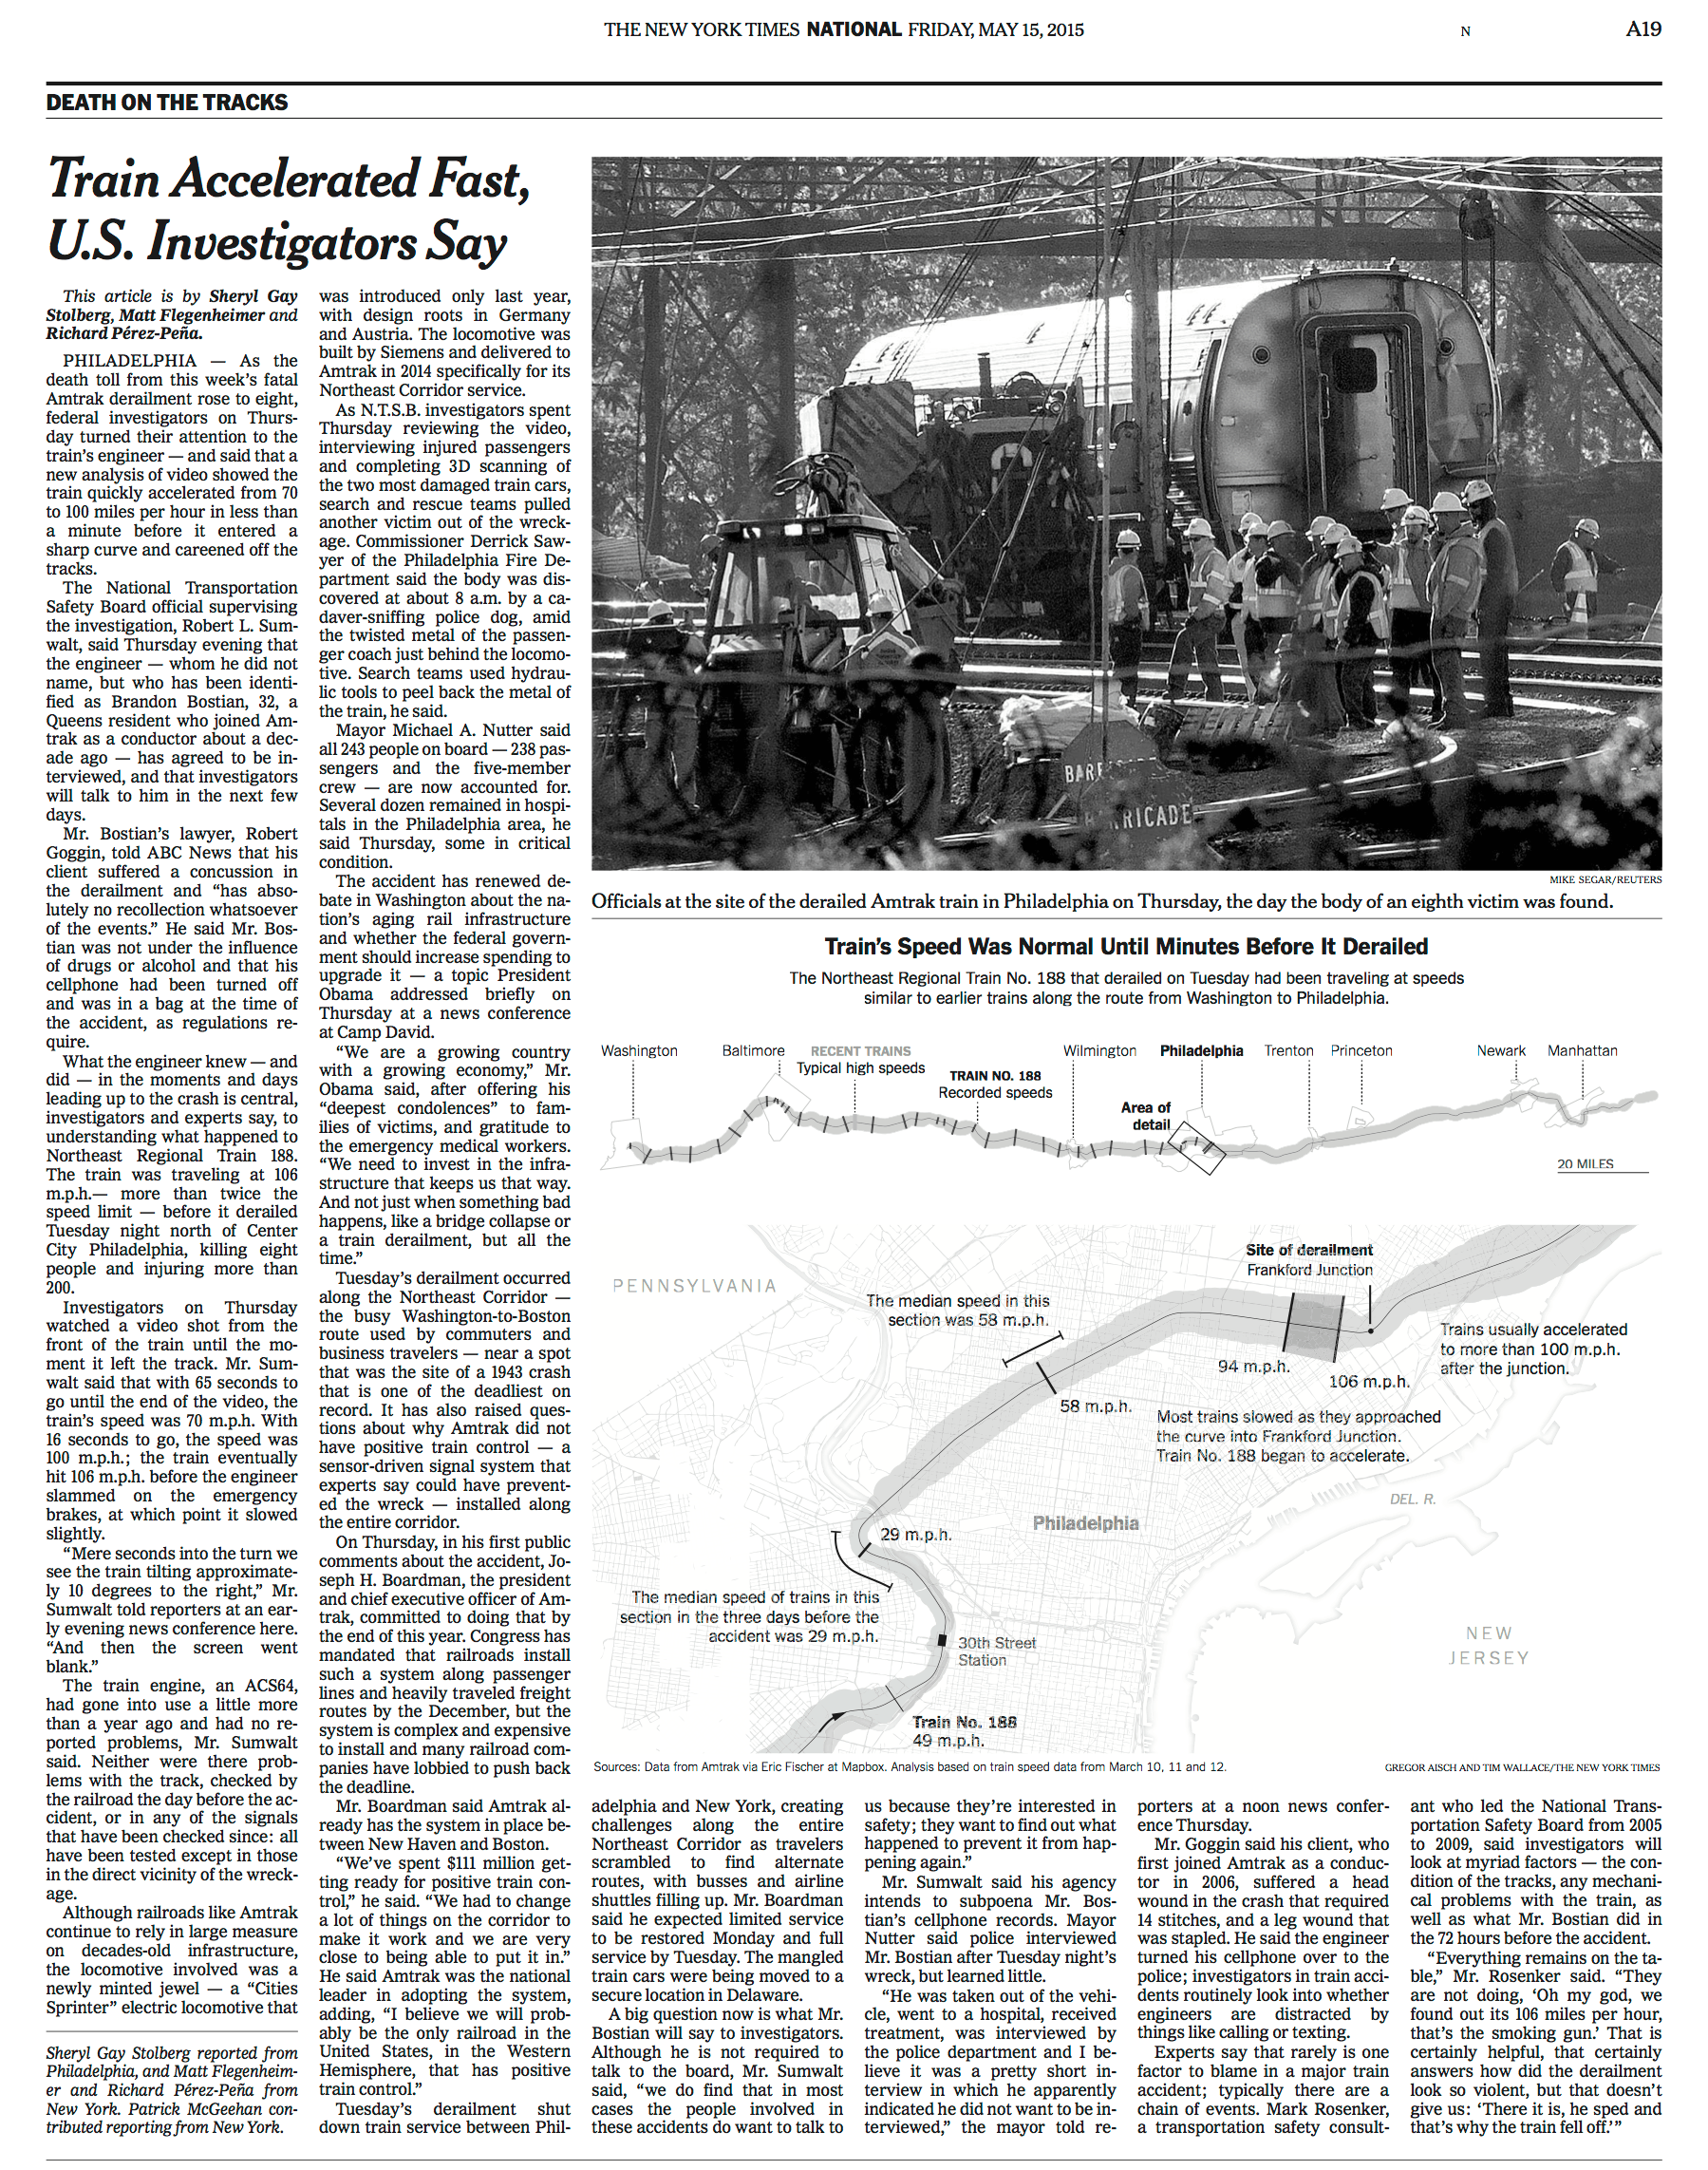 Investigating the Philadelphia Amtrak Train Derailment